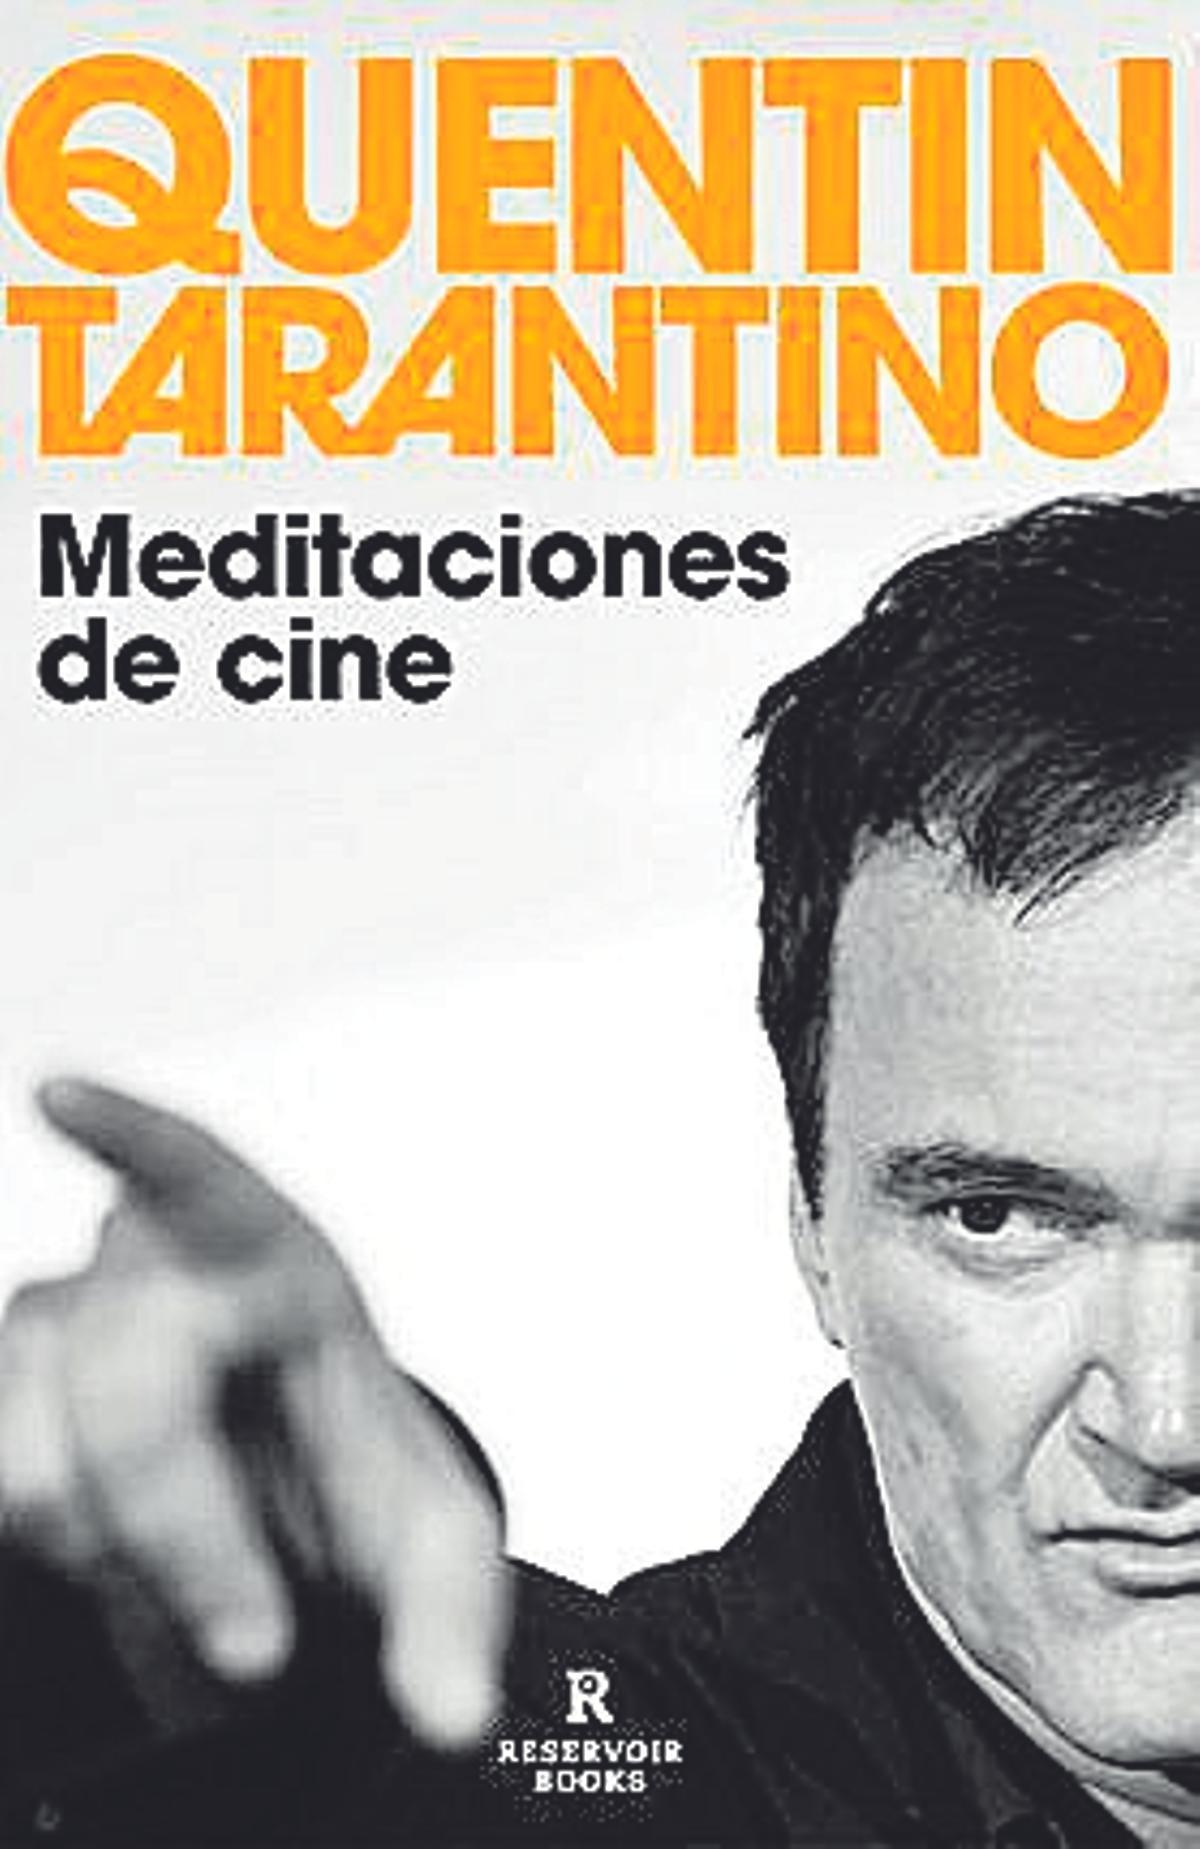 Quentin Tarantino  Meditaciones de cine   Reservoir  Books   424 páginas / 21 euros (10 euros versión digital)